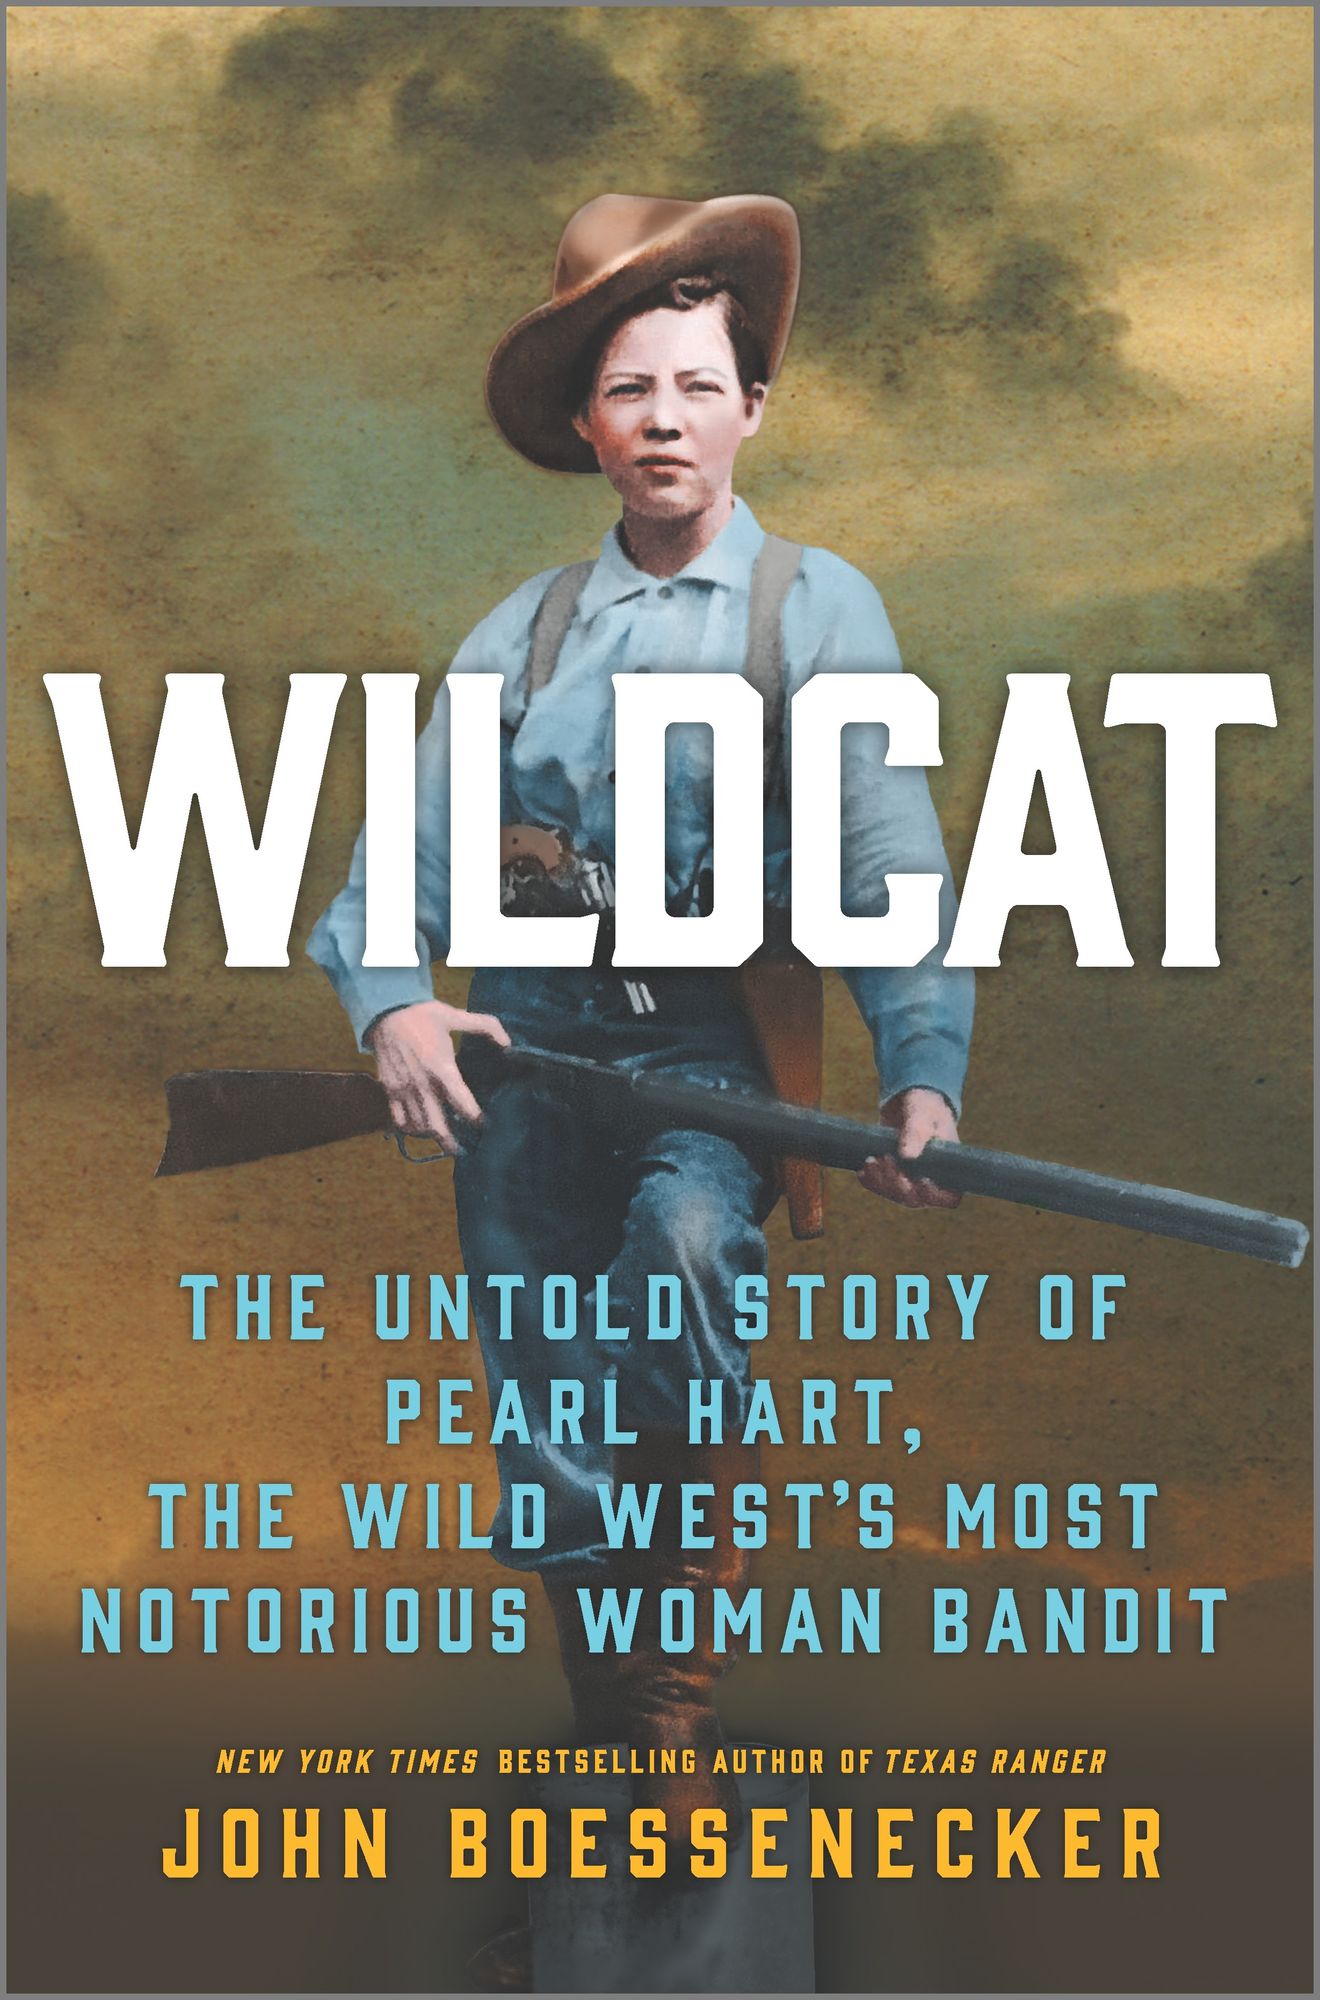 Wildcat by John Boessenecker